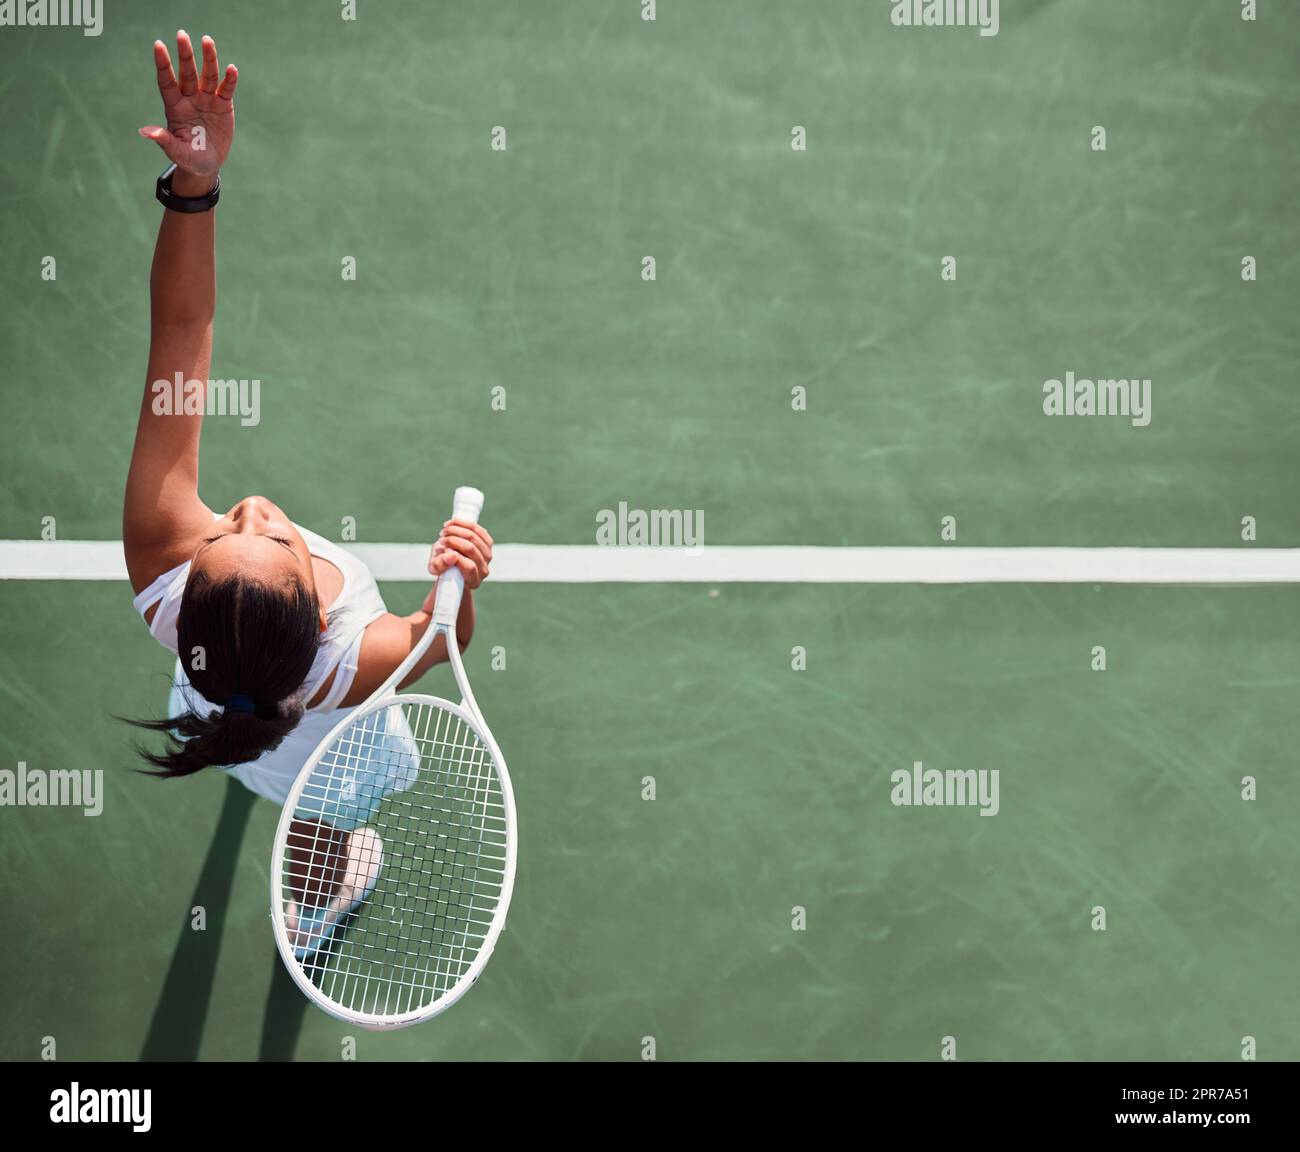 ¡A jugar! Disparo de ángulo alto de una mujer joven sirviendo una pelota mientras juega al tenis en una cancha. Foto de stock